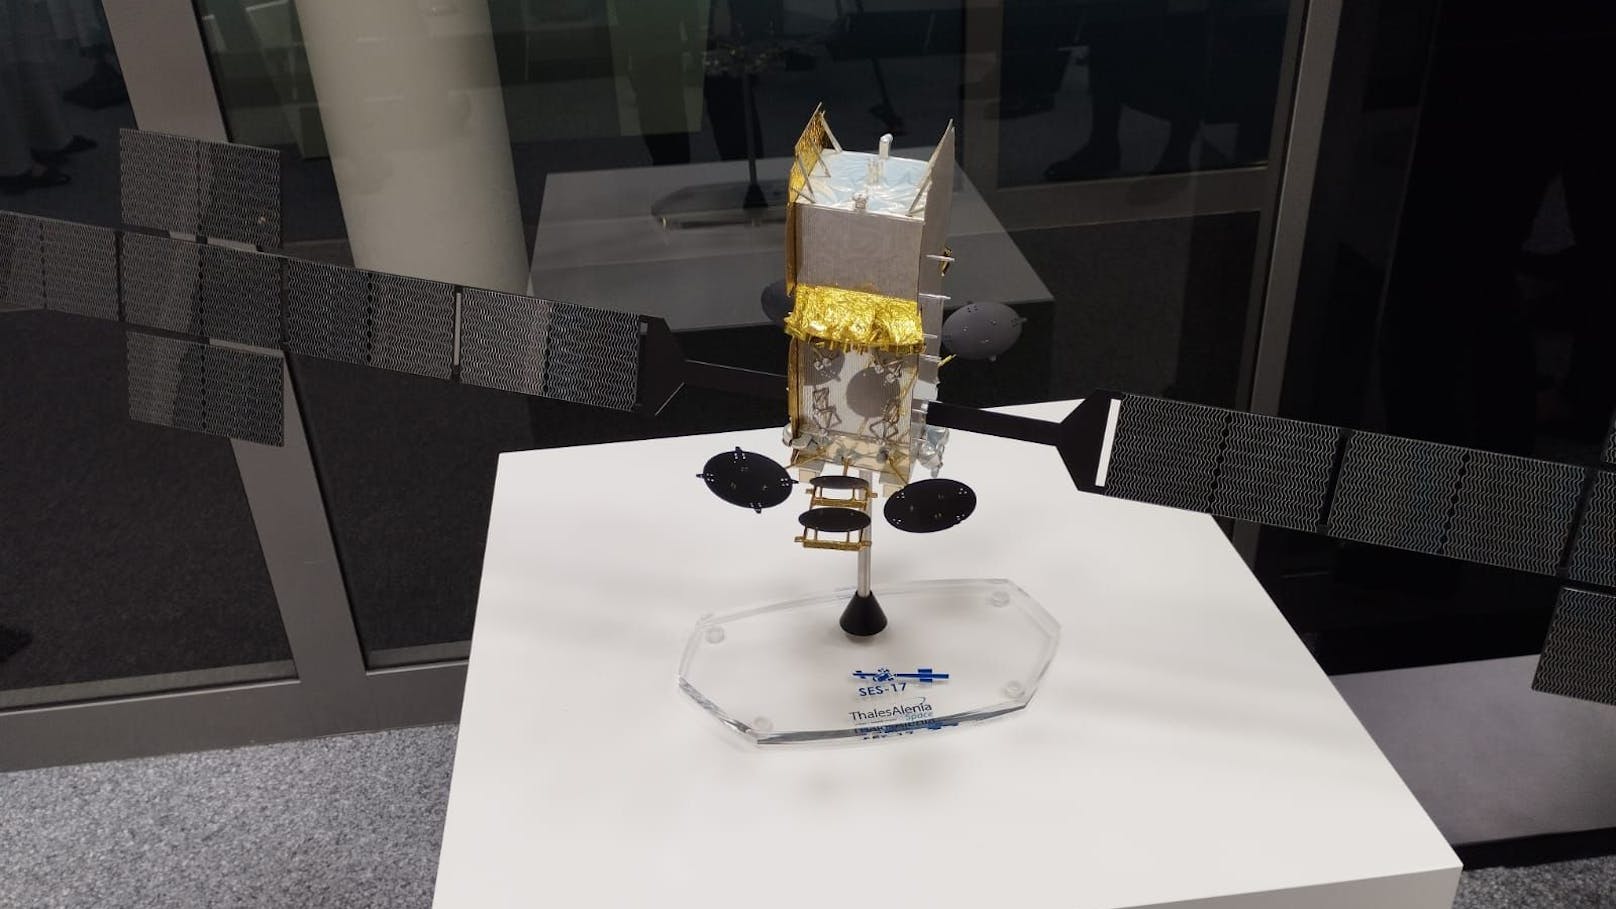 Modell des Satelliten SES-17 in der Firmenzentrale in Luxemburg